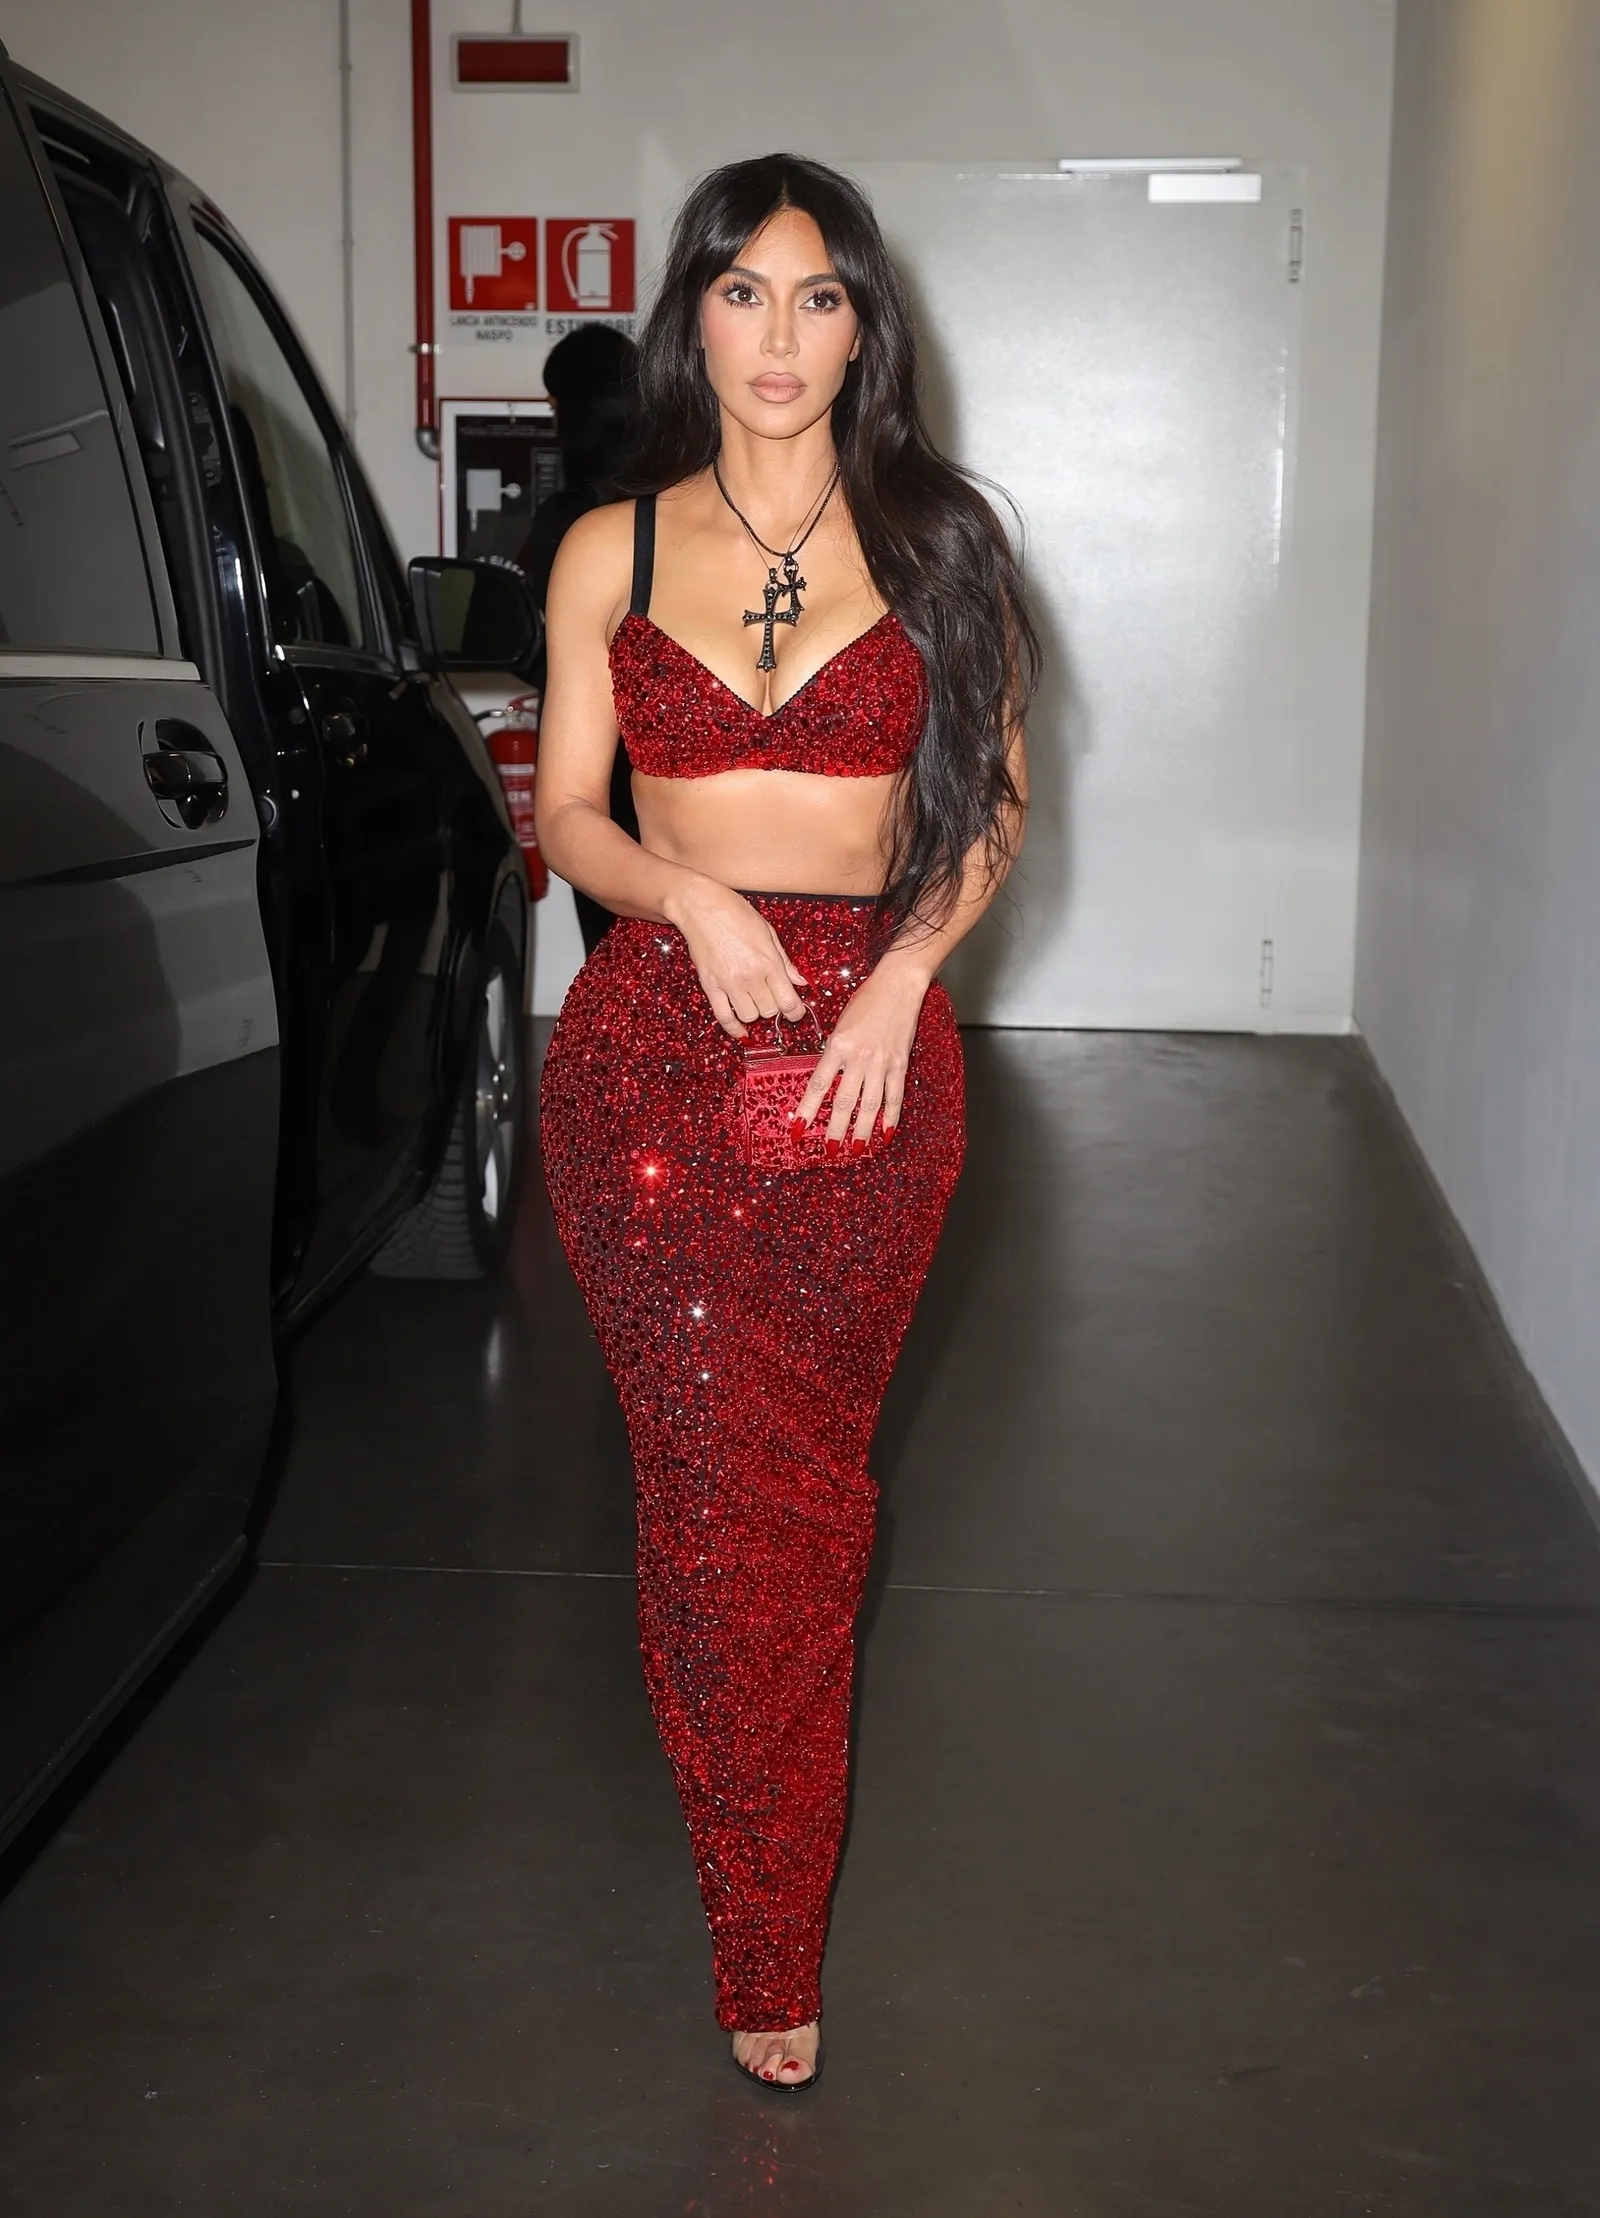 Mỗi khi bước lên bậc thang, Kim Kardashian đều chật vật vì trang phục.